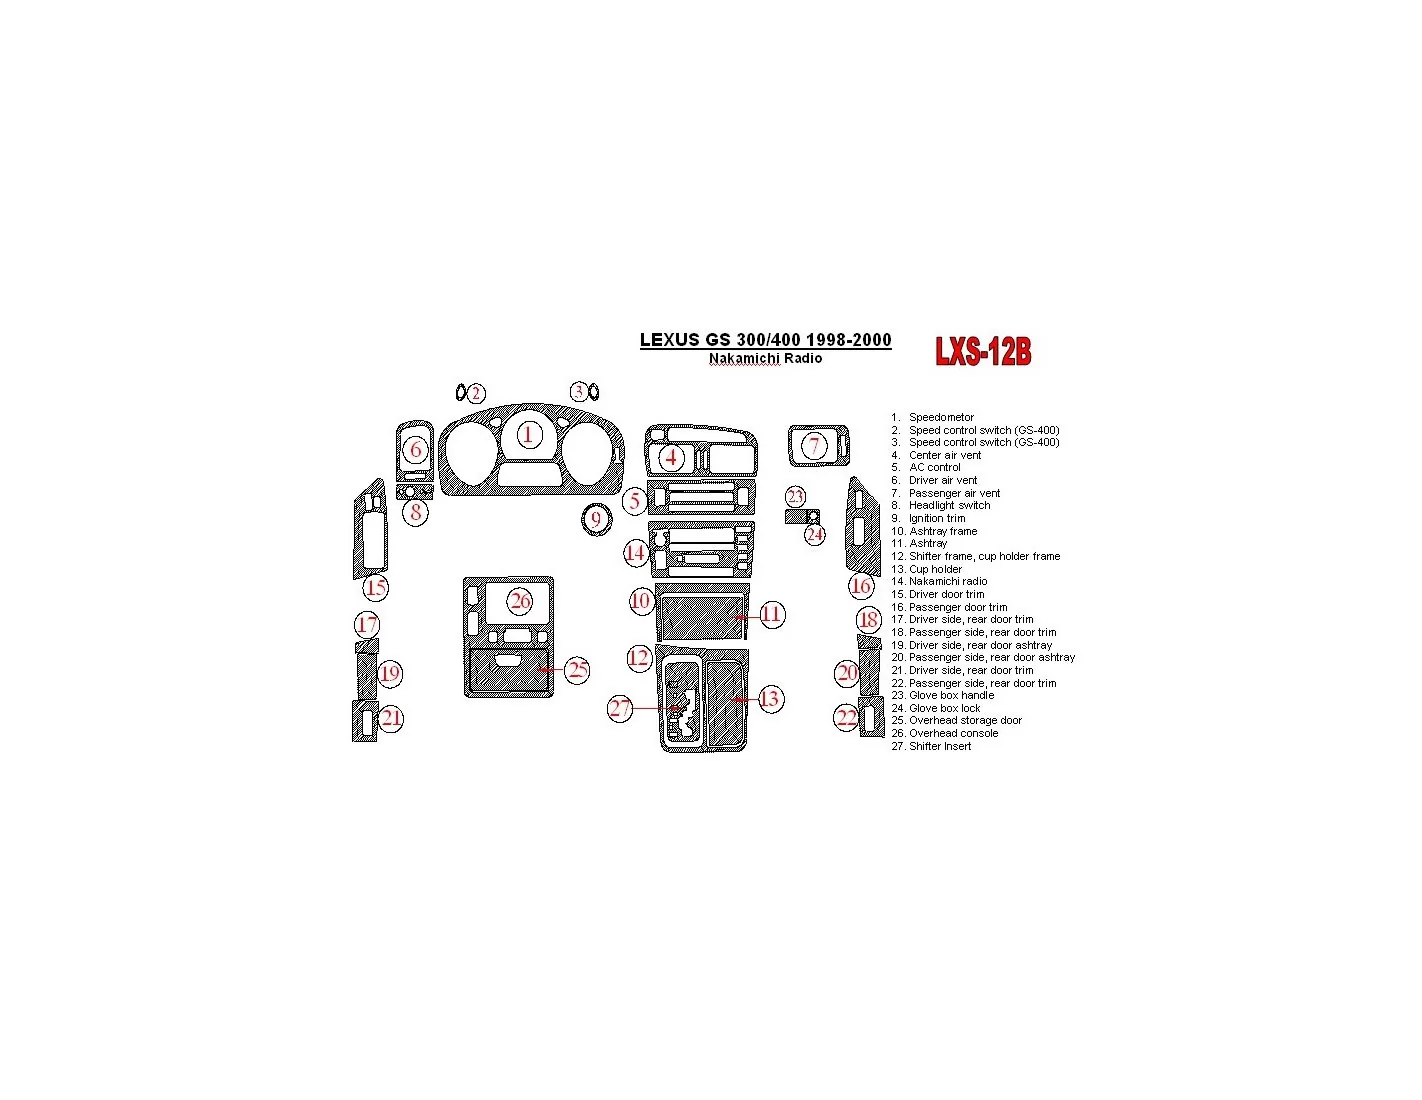 Lexus GS 1998-2000 Nakamichi Radio, OEM Compliance, 26 Parts set BD Kit la décoration du tableau de bord - 1 - habillage decor d